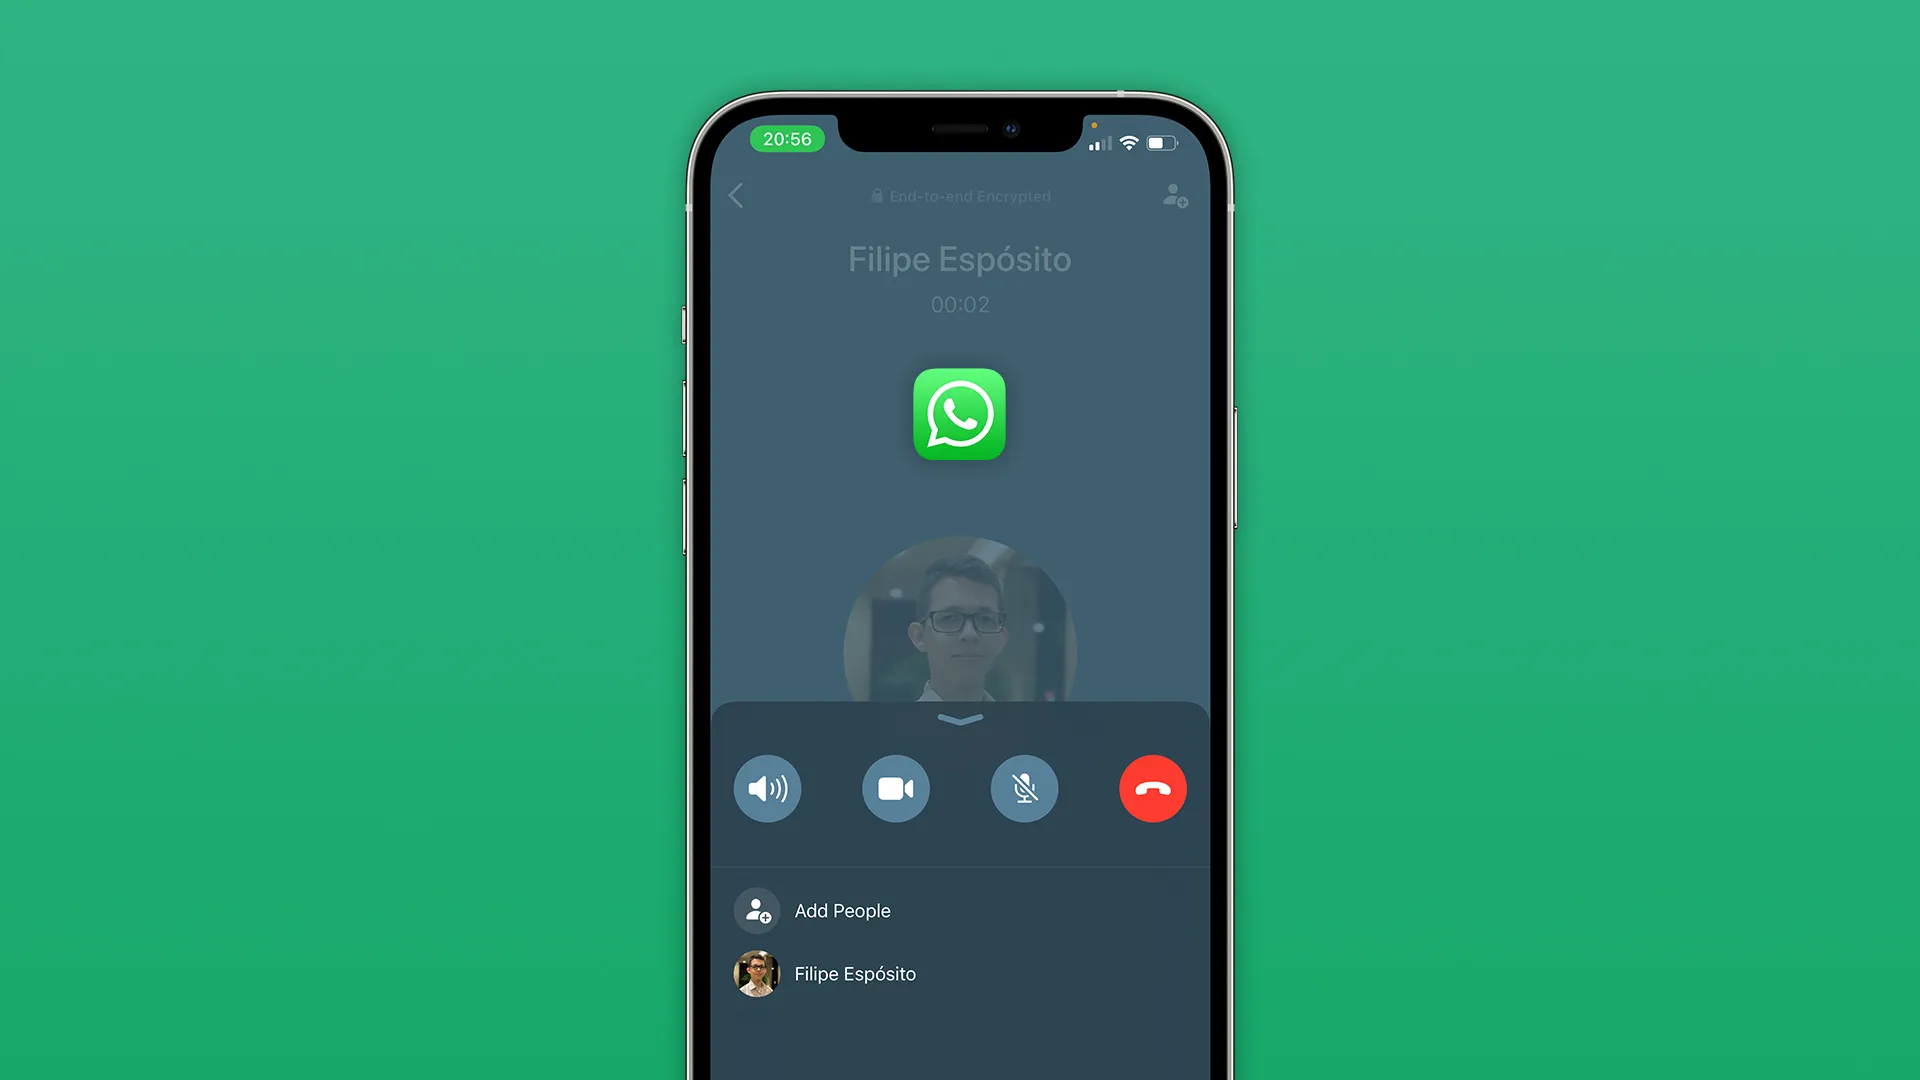 Domine o Whatsapp com Gravações de Ligações!📱💬 Já imaginou ter a capacidade de gravar suas conversas no WhatsApp?